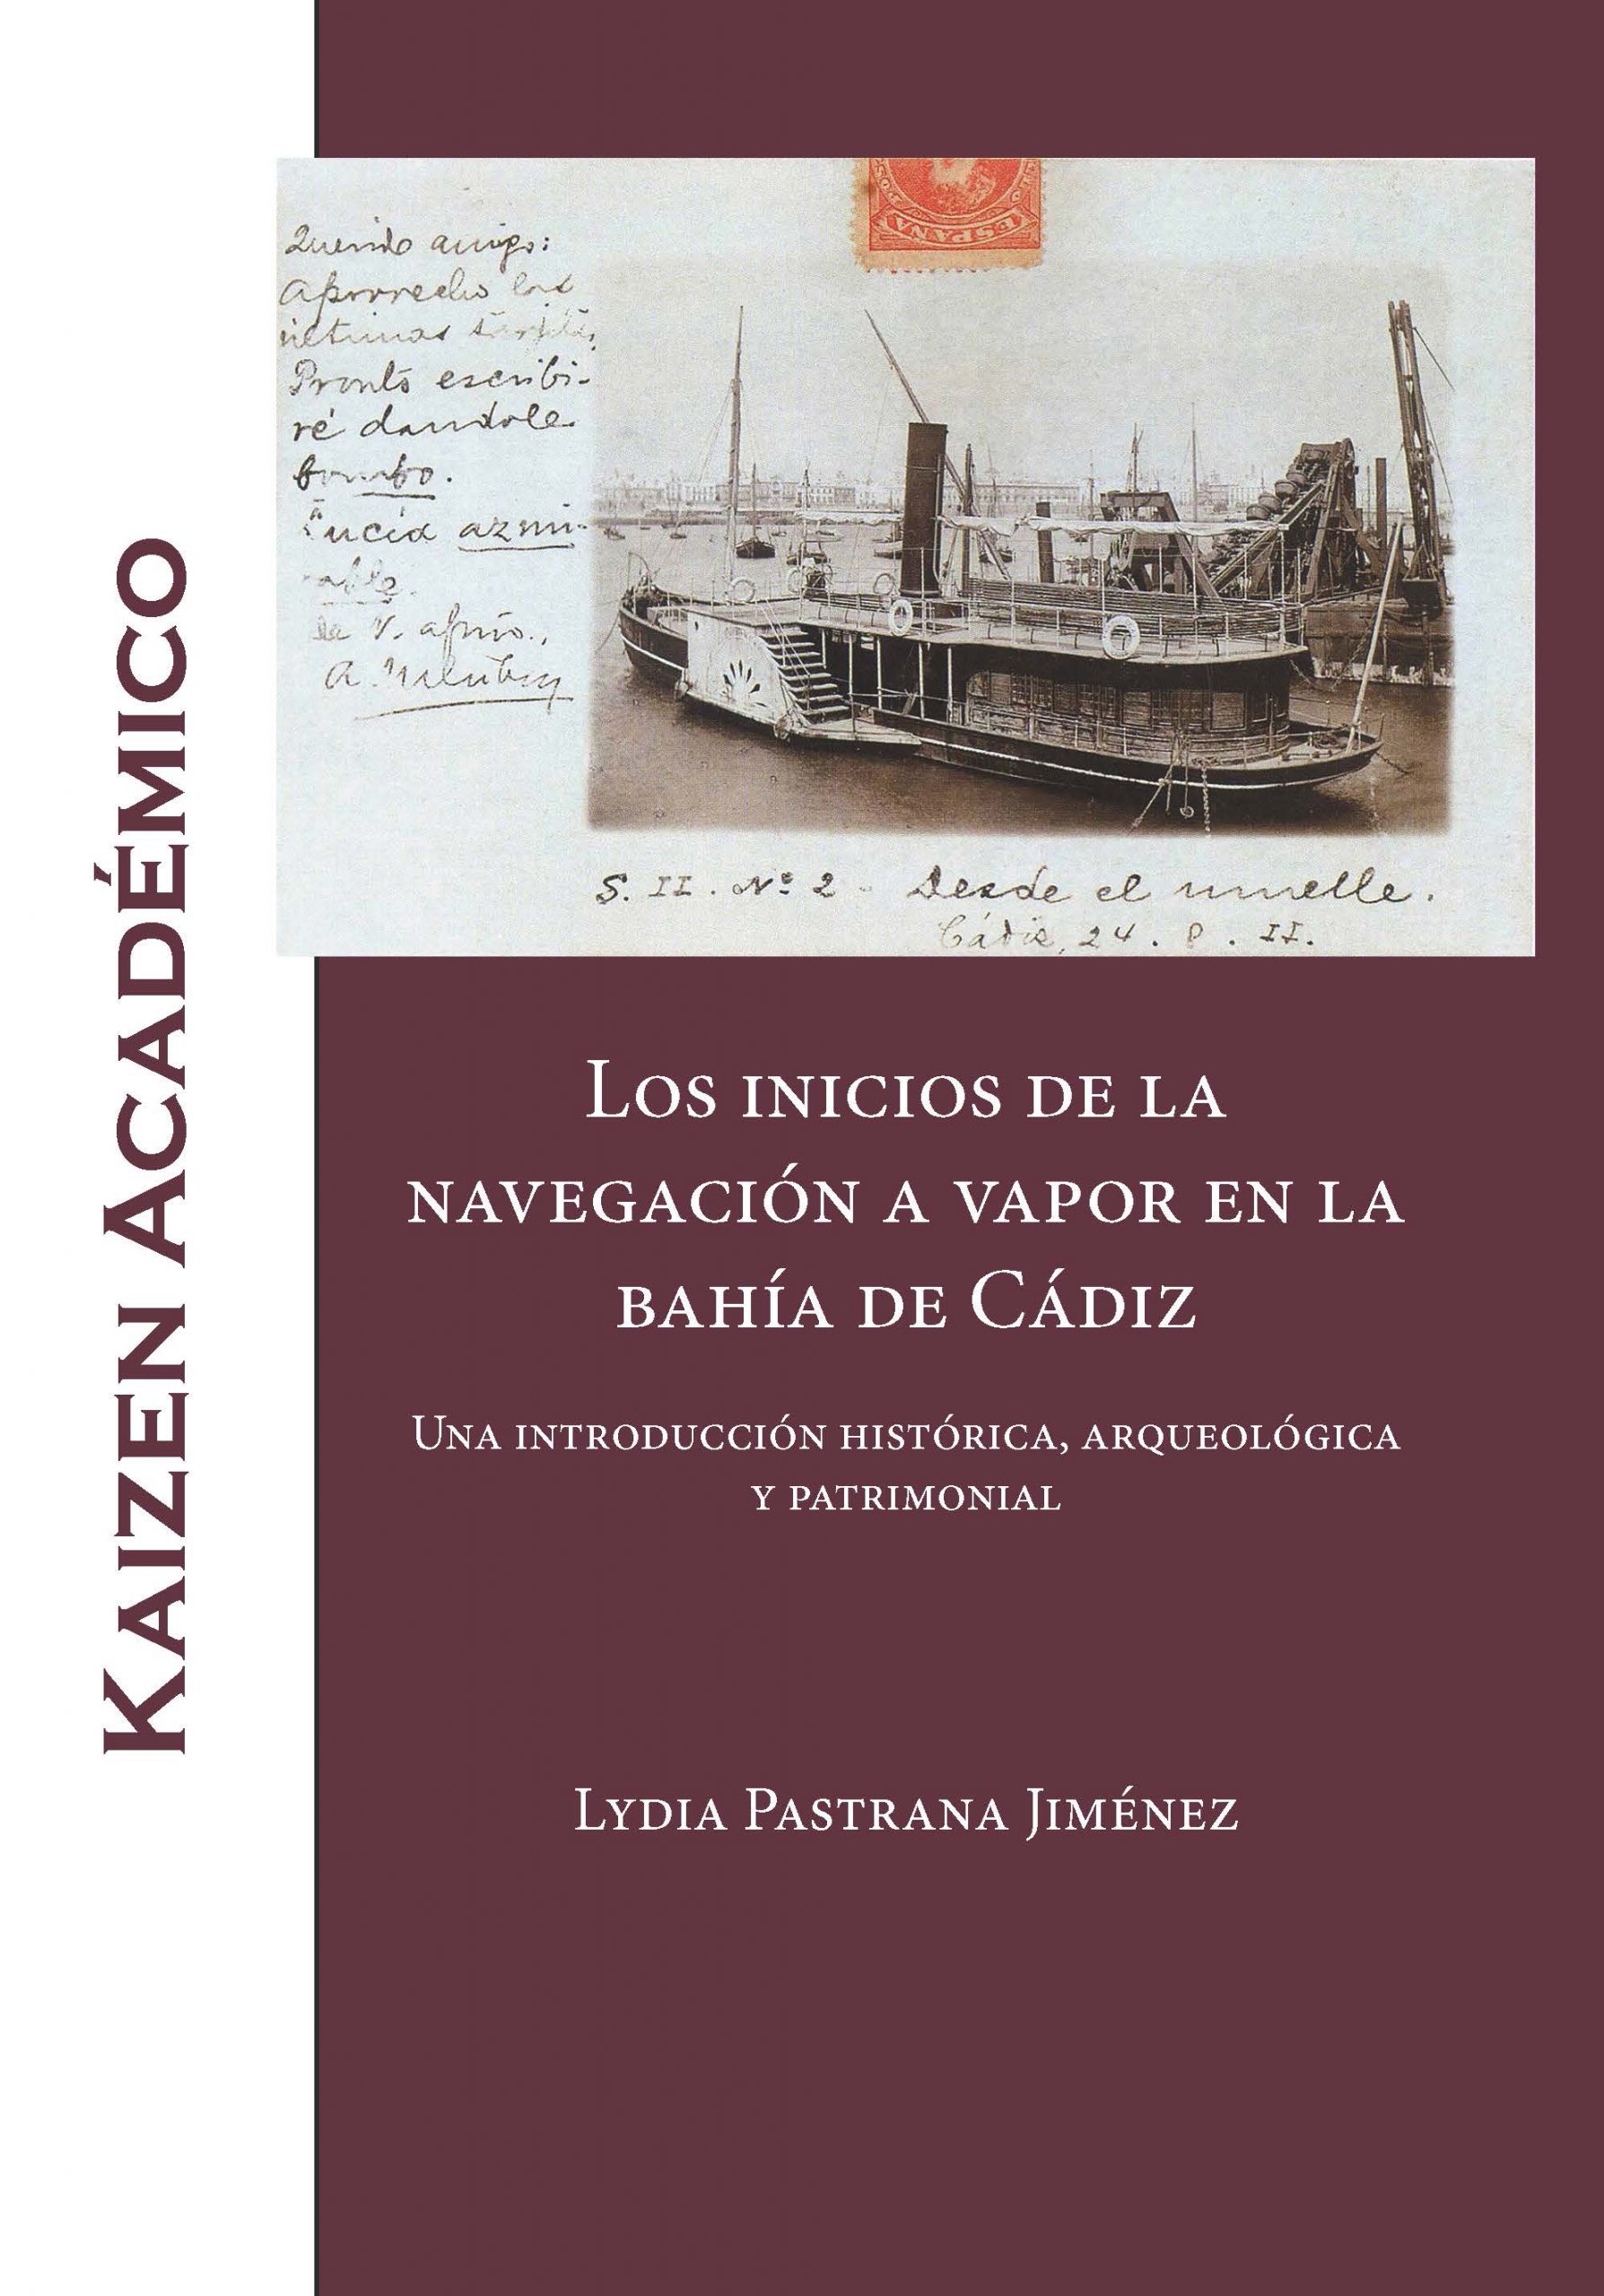 Los inicios de la navegación a vapor en la bahía de Cádiz